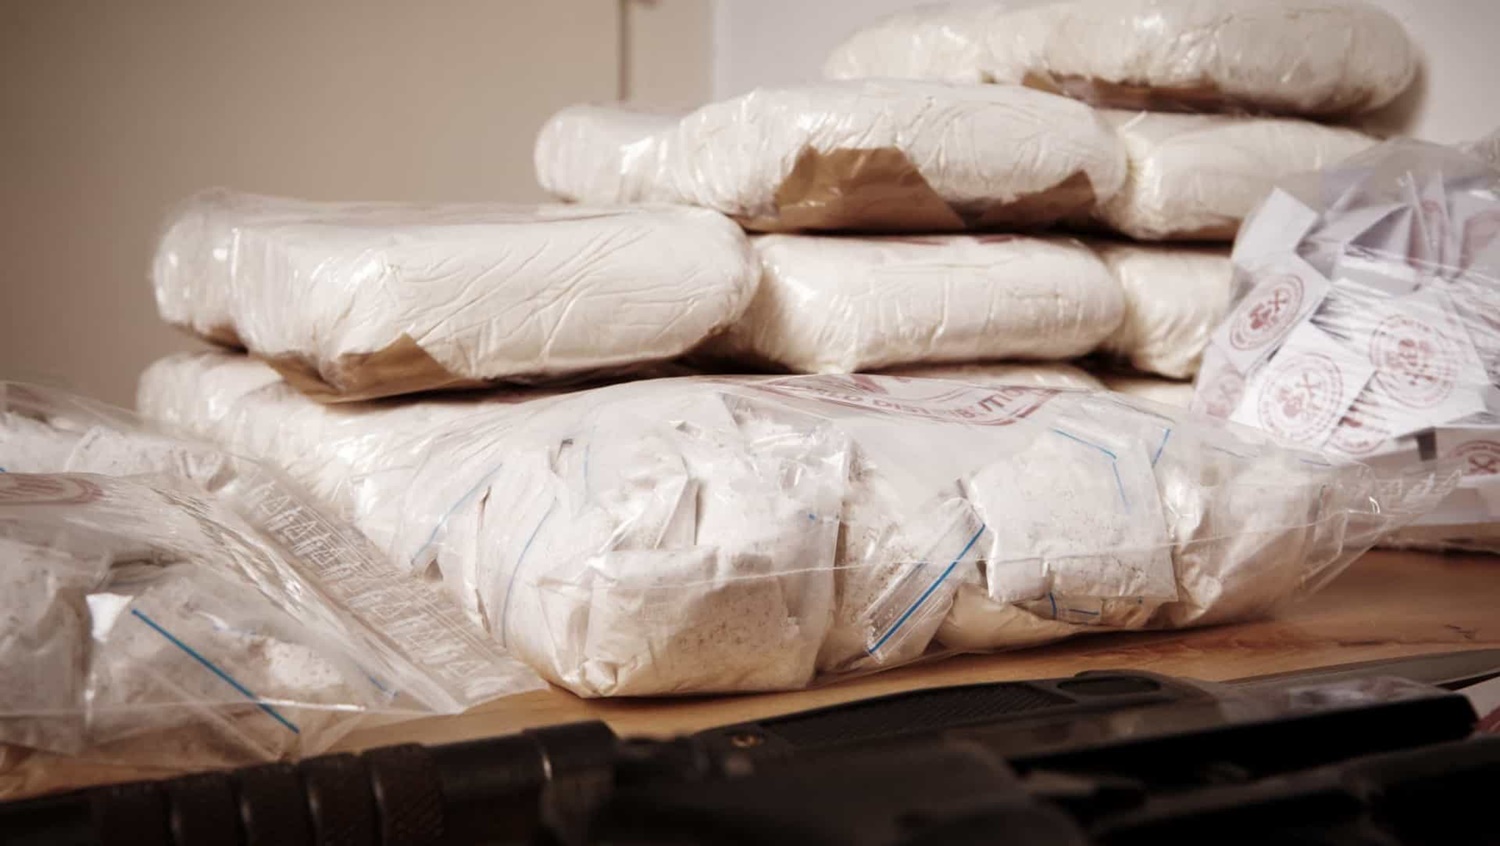 FATAL: Cocaína que matou 24 pessoas tinha anestésico para elefante